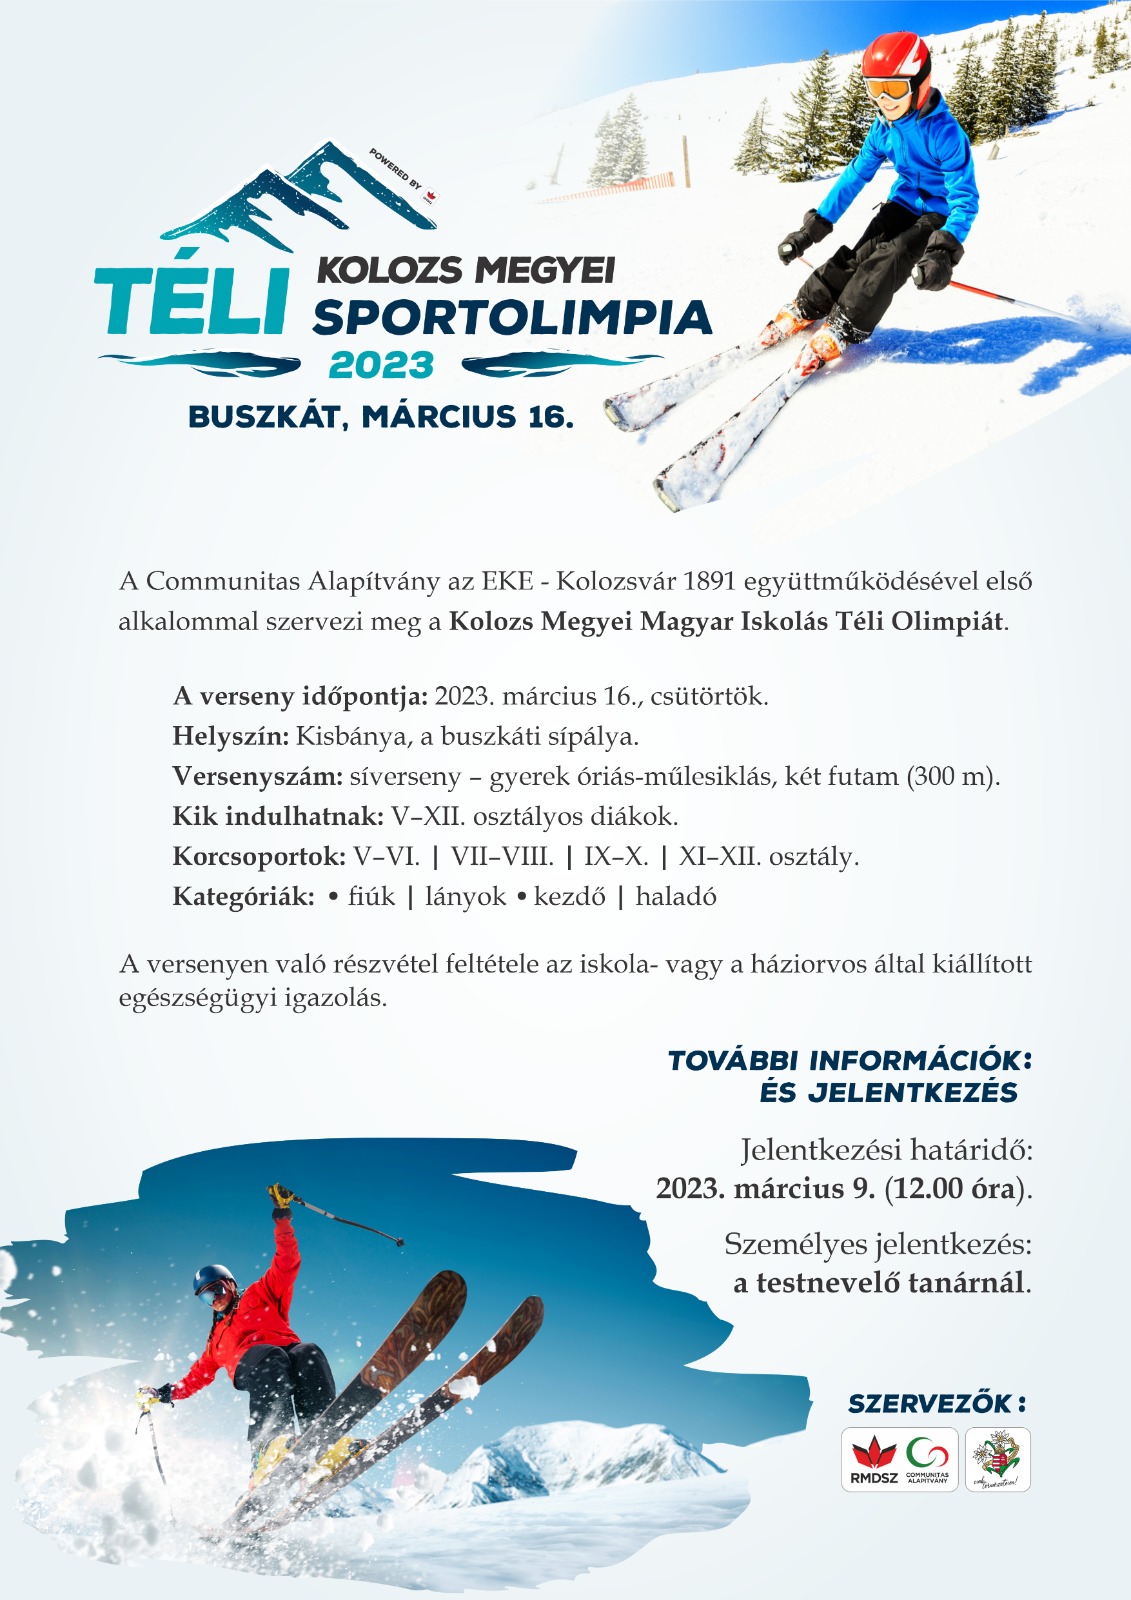 Először szerveznek Kolozs Megyei Magyar Iskolás Téli Sportolimpiát